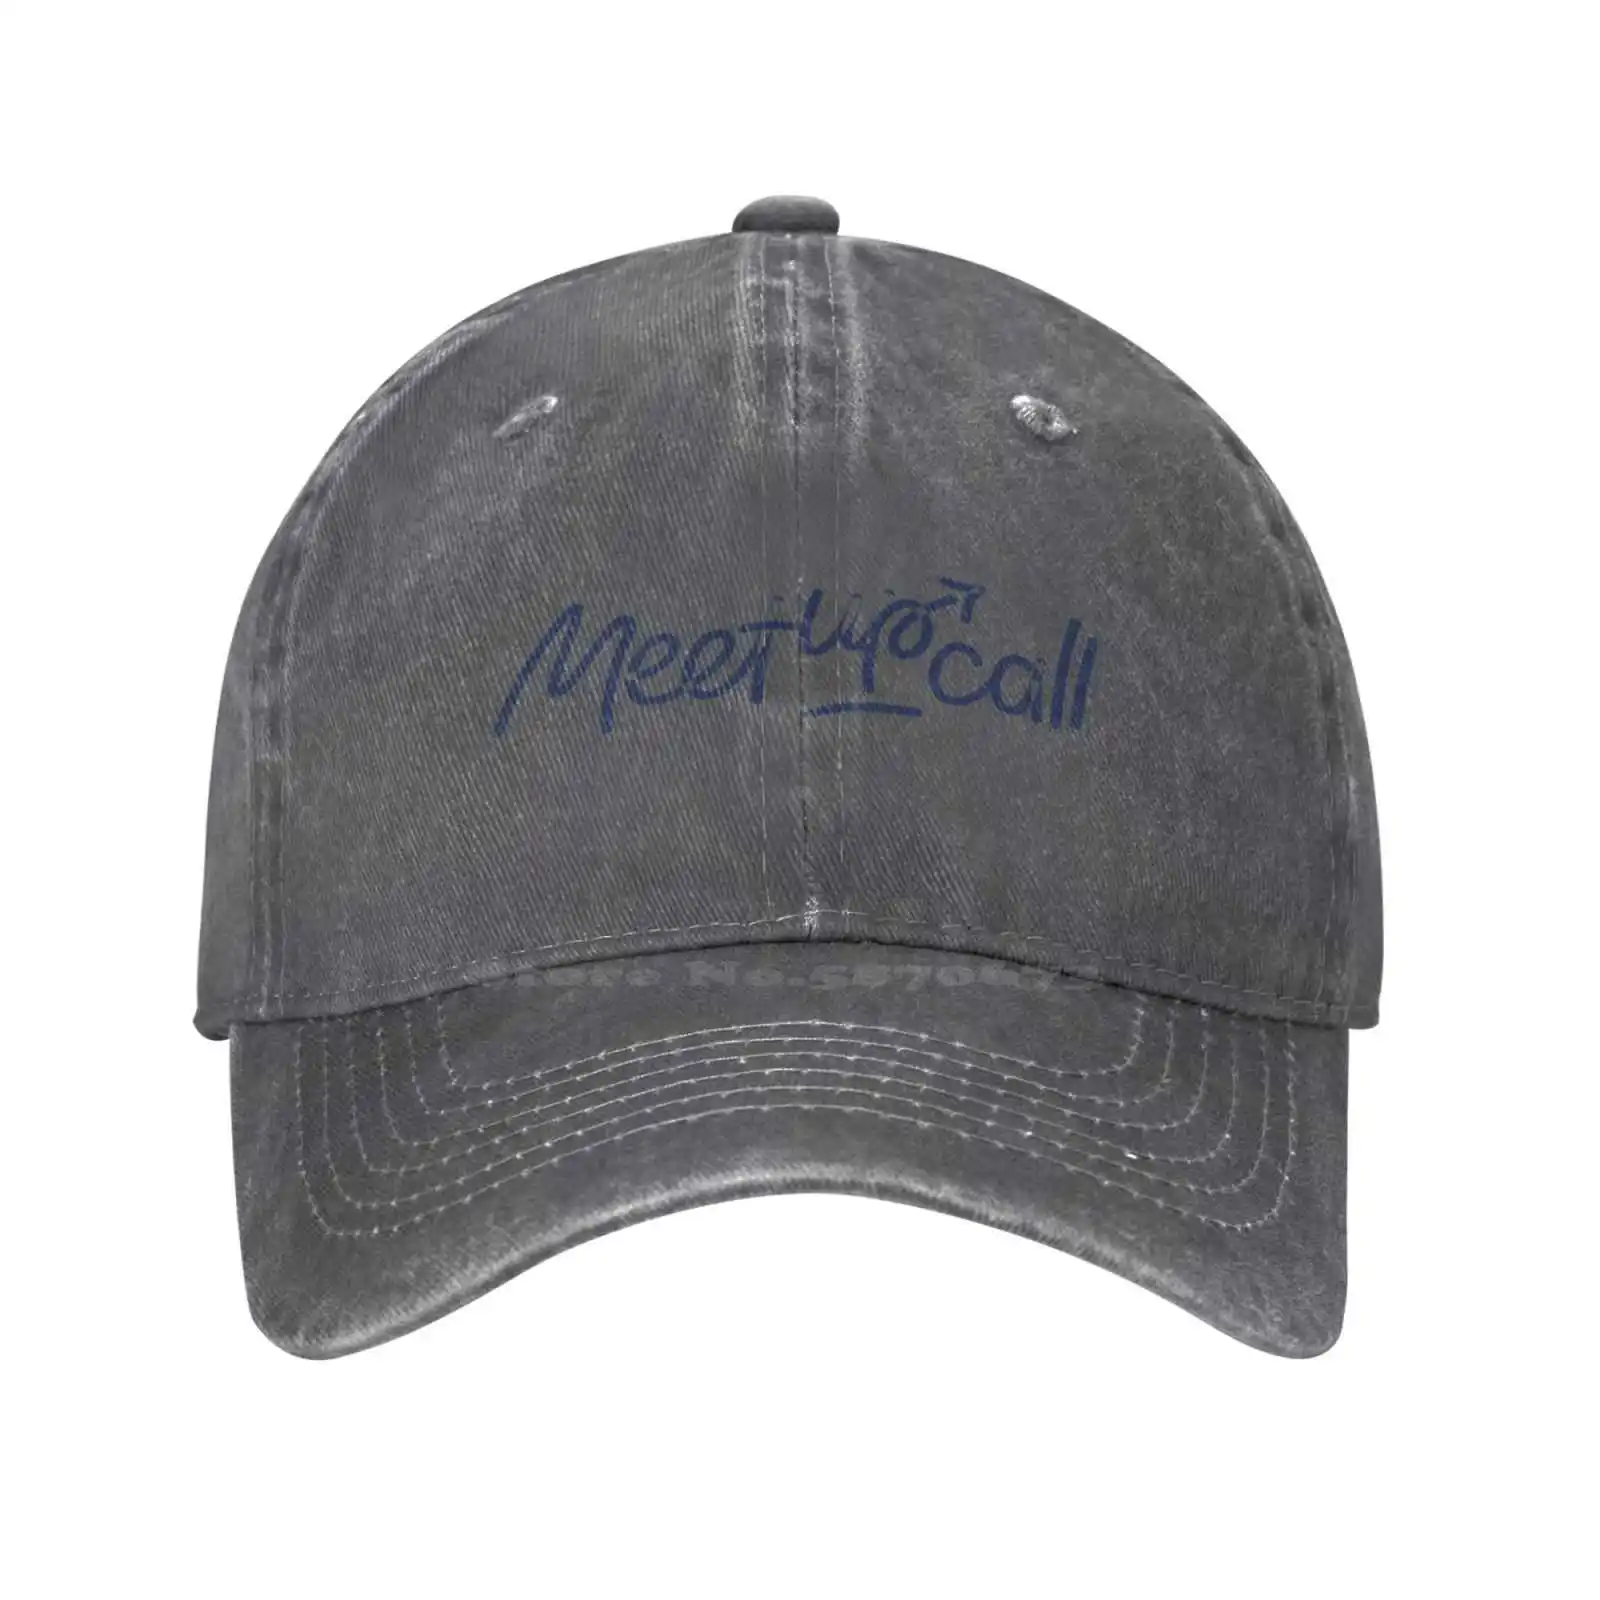 Повседневная джинсовая кепка с графическим принтом логотипа Meetupcall, Вязаная шапка, Бейсболка Изображение 3